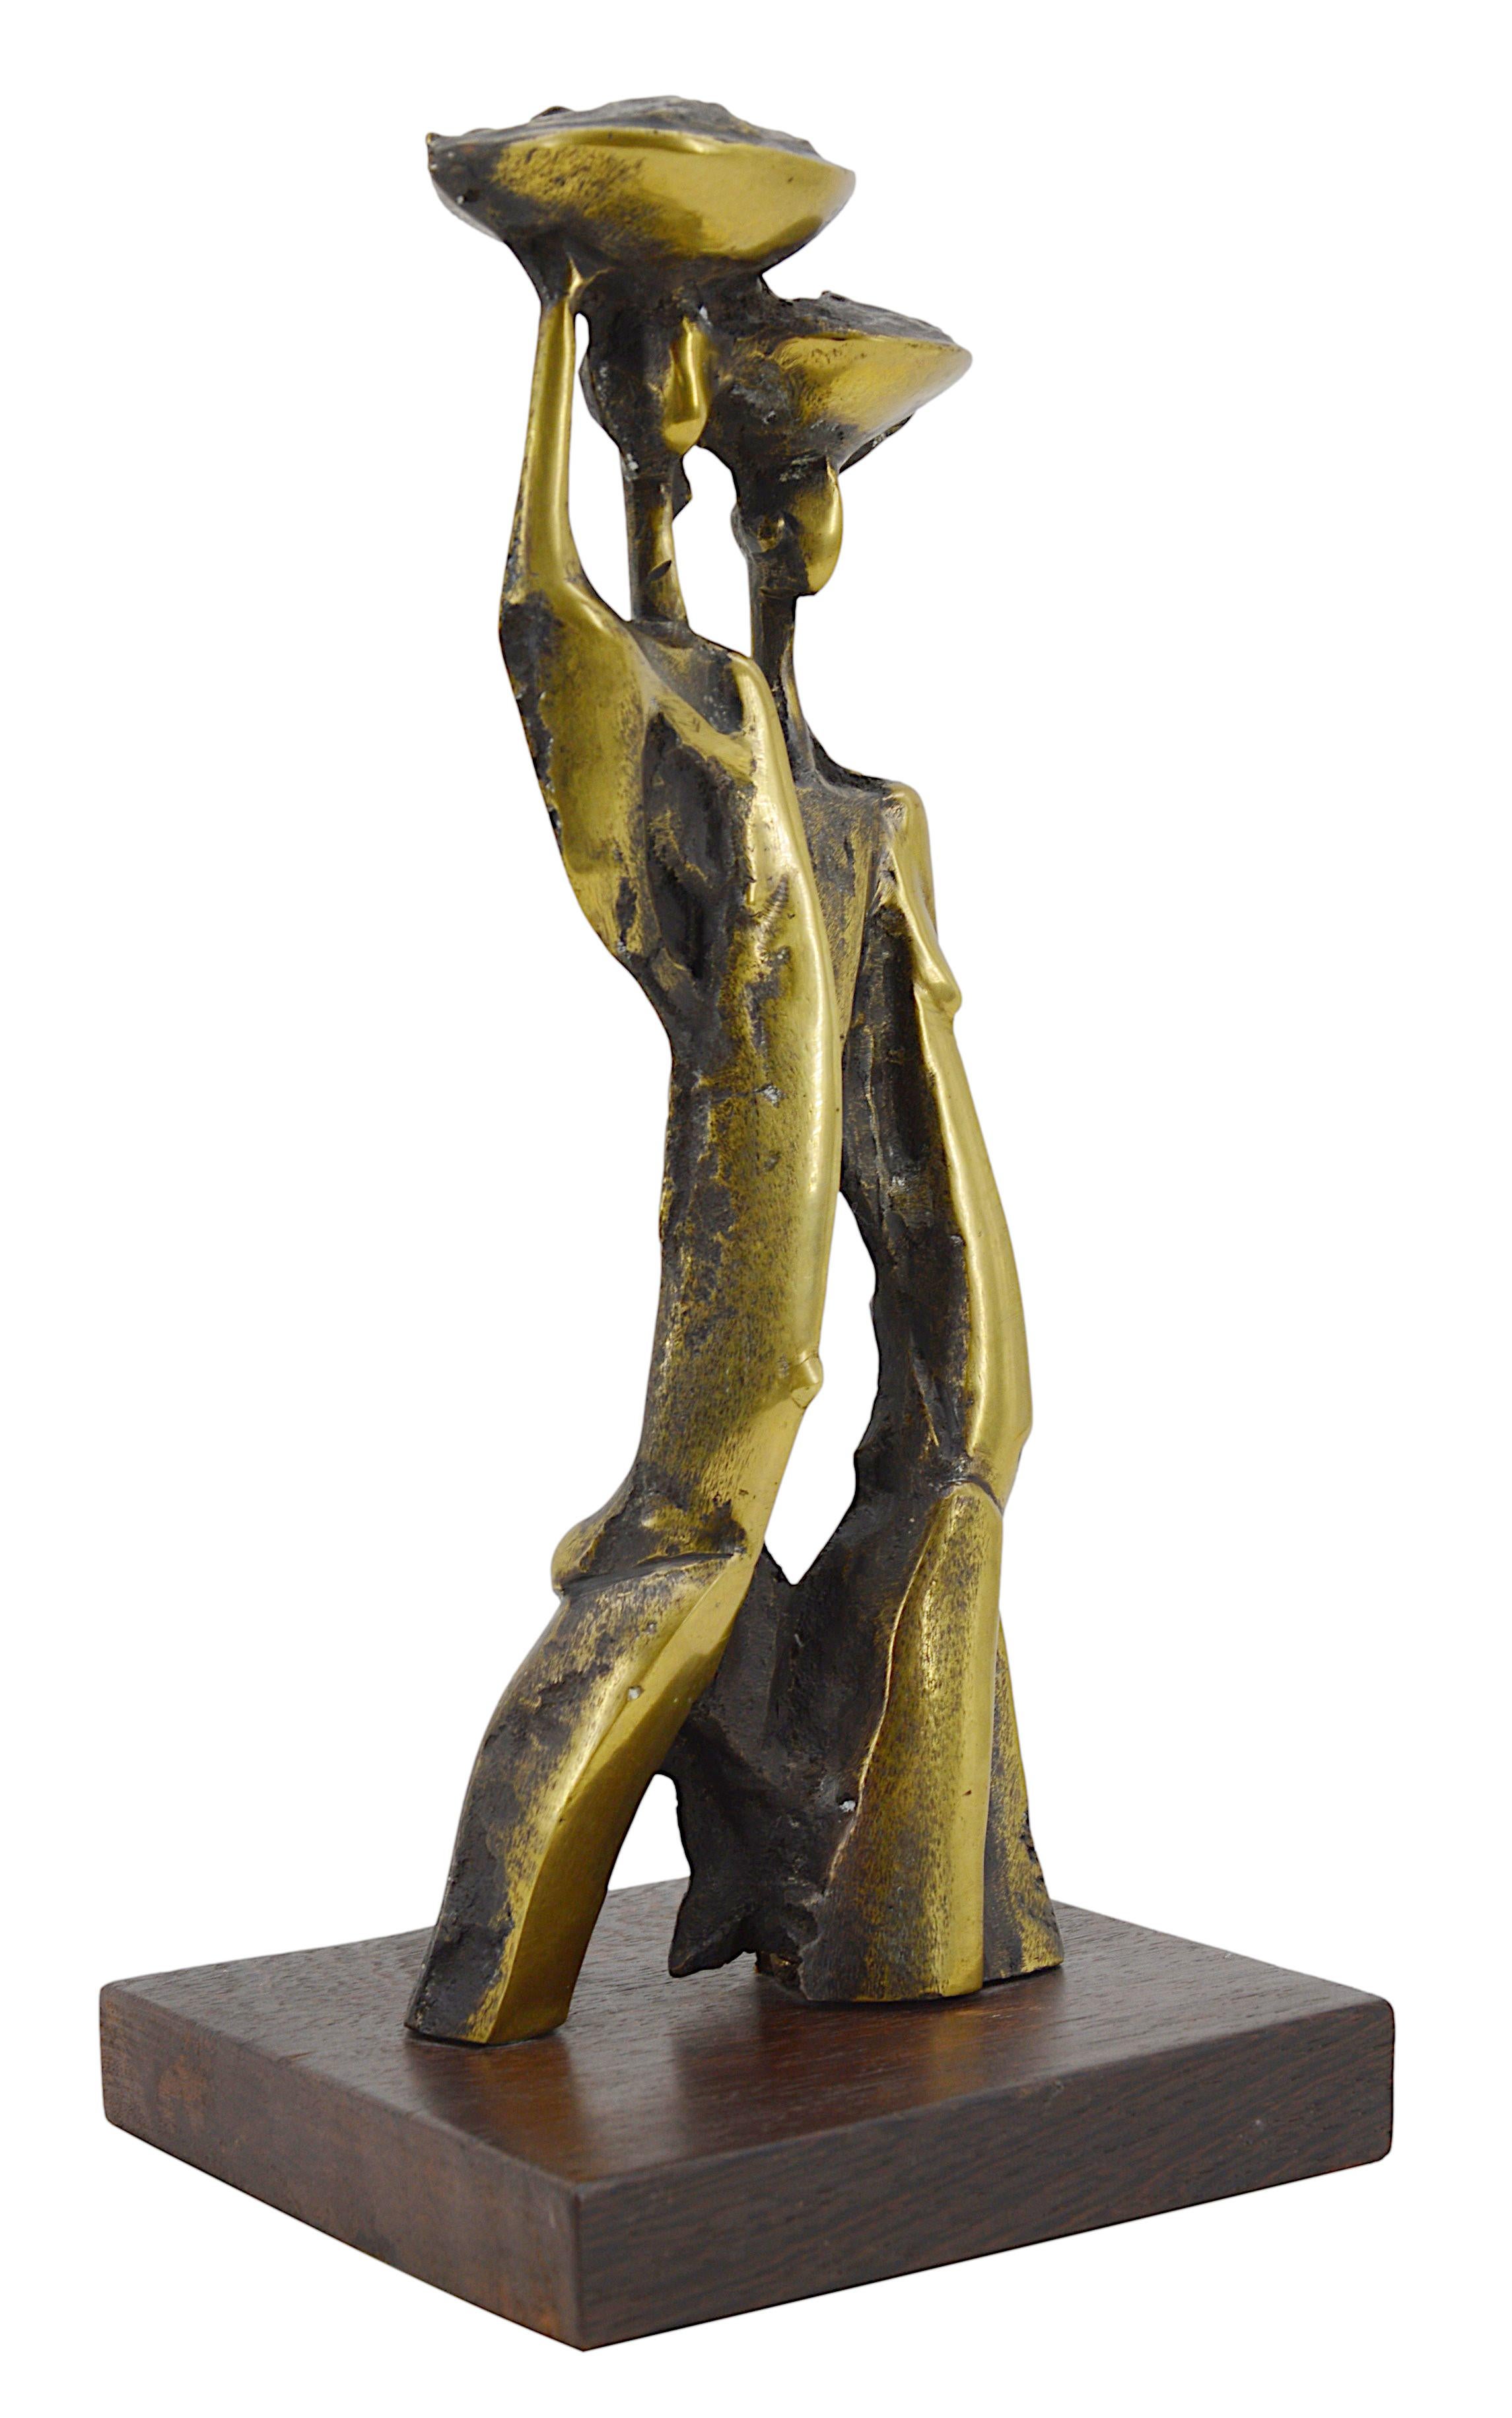 Sculpture en bronze de Mayemba (1946-), Congo, 2002. Deux femmes africaines avec des plateaux. Sculpture en bronze sur un socle en bois (palmier ?). Dimensions : hauteur : 33 cm, largeur : 16 cm, profondeur : 14,5 cm. Signé, numéroté, situé et daté